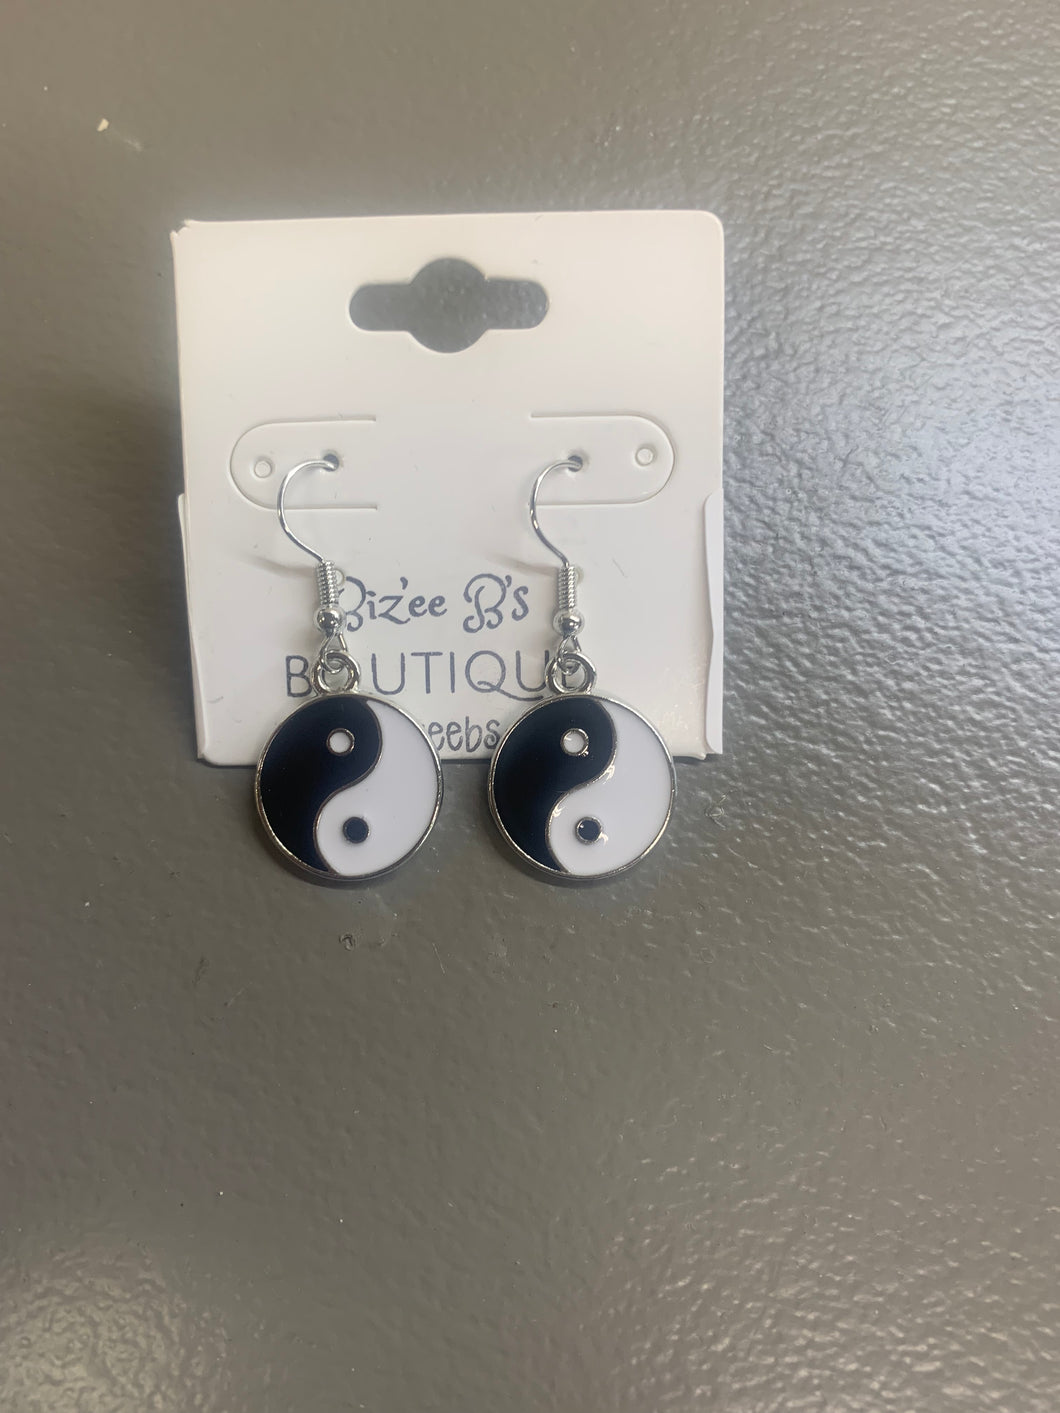 Yin and Yang sign earrings